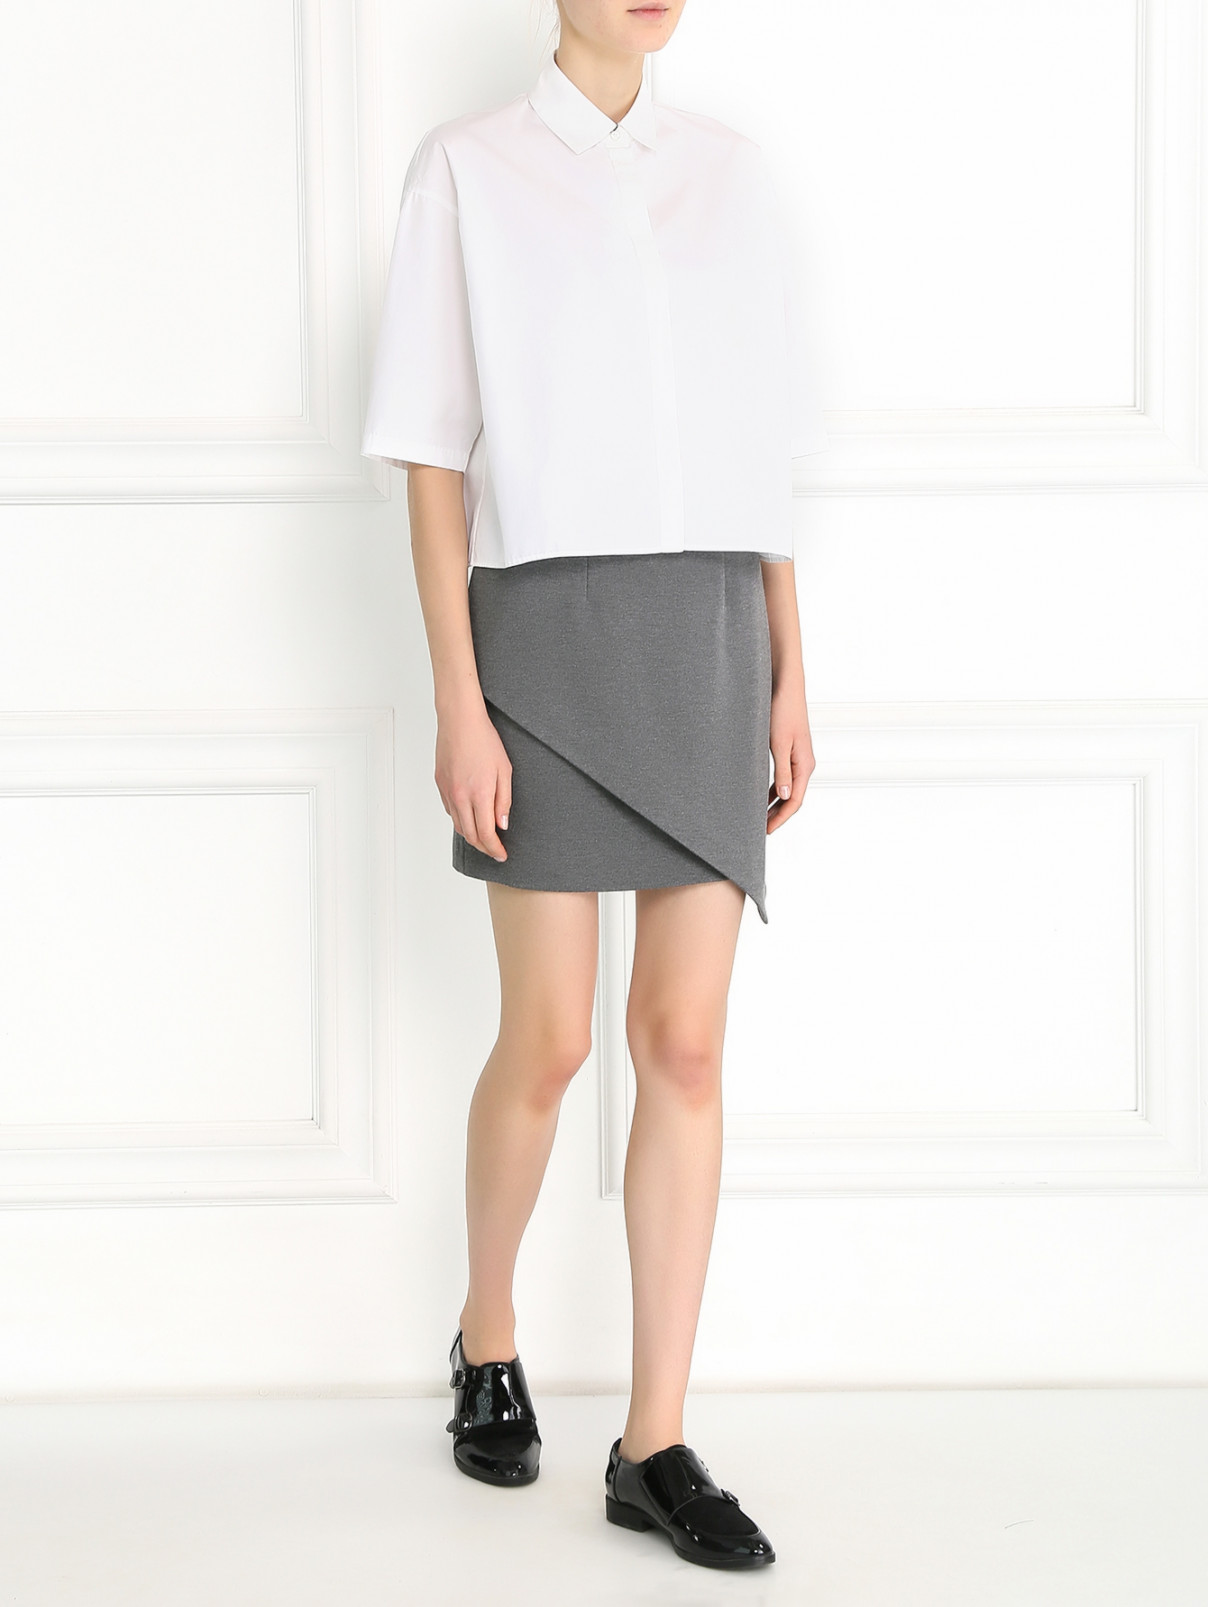 Трикотажная юбка-мини с запахом FINDER KEEPERS-PAUSE  –  Модель Общий вид  – Цвет:  Серый